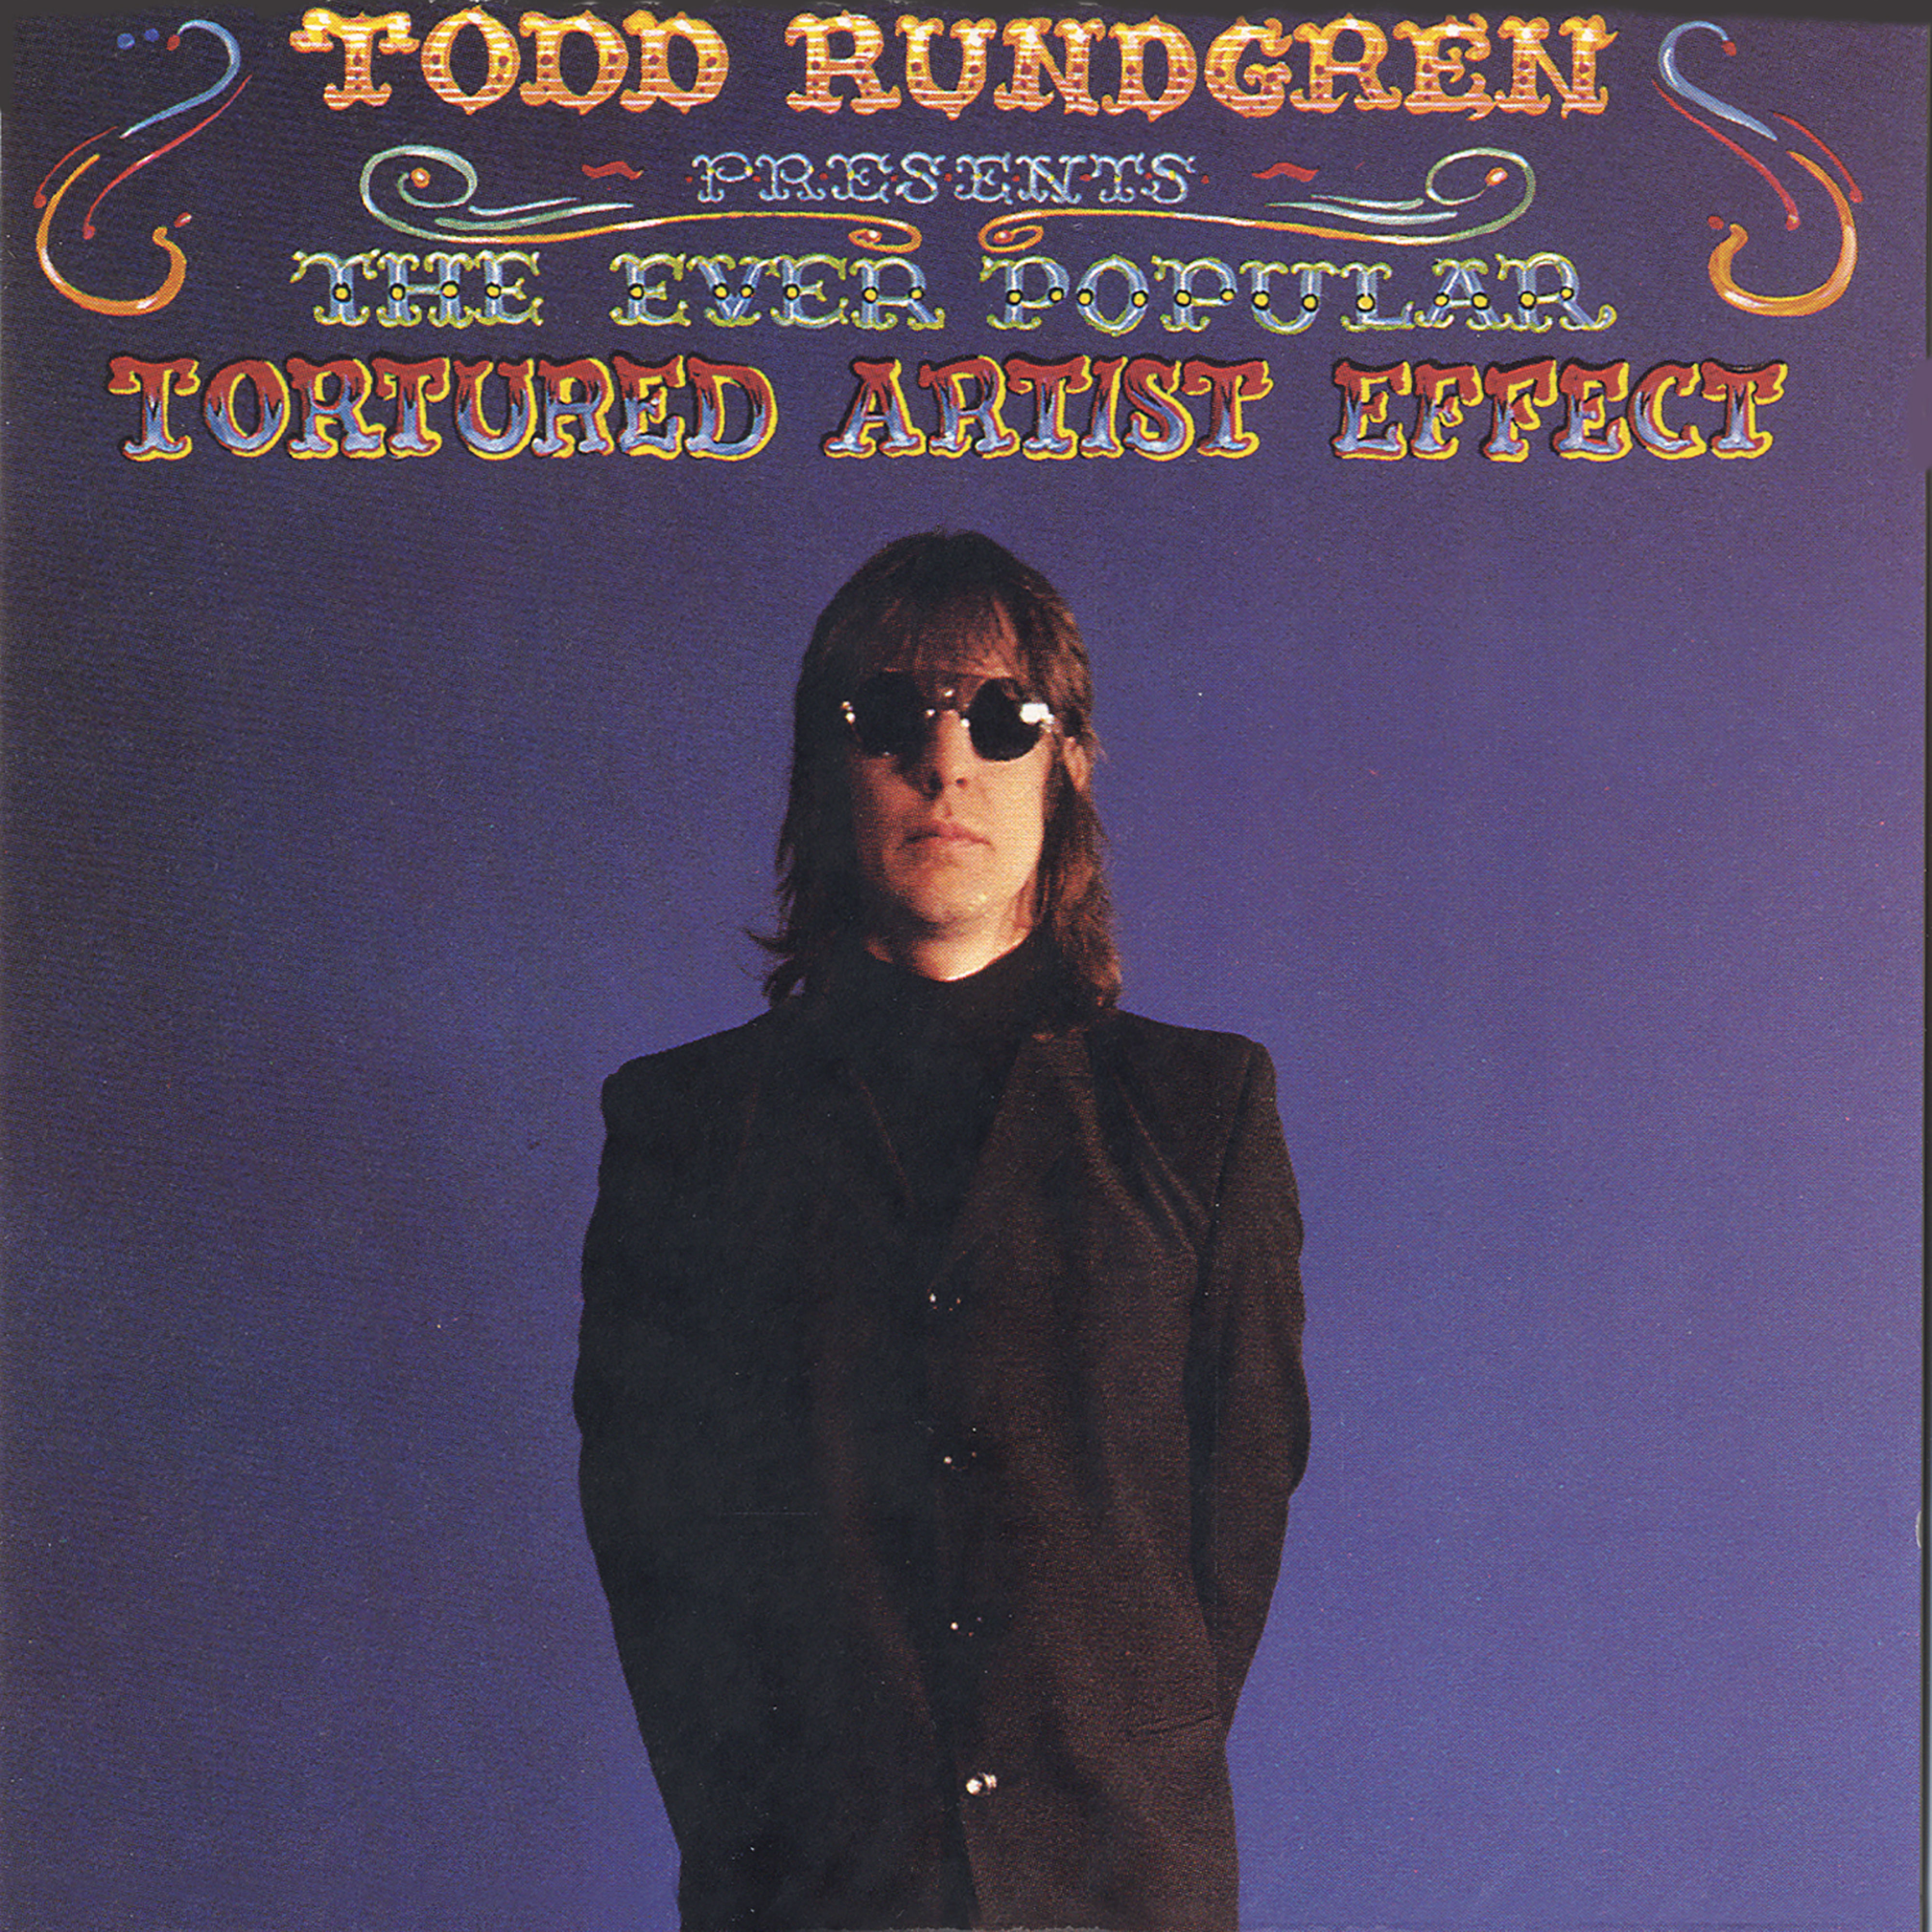 Todd Rundgren – The Ever Popular Tortured Artist Effect